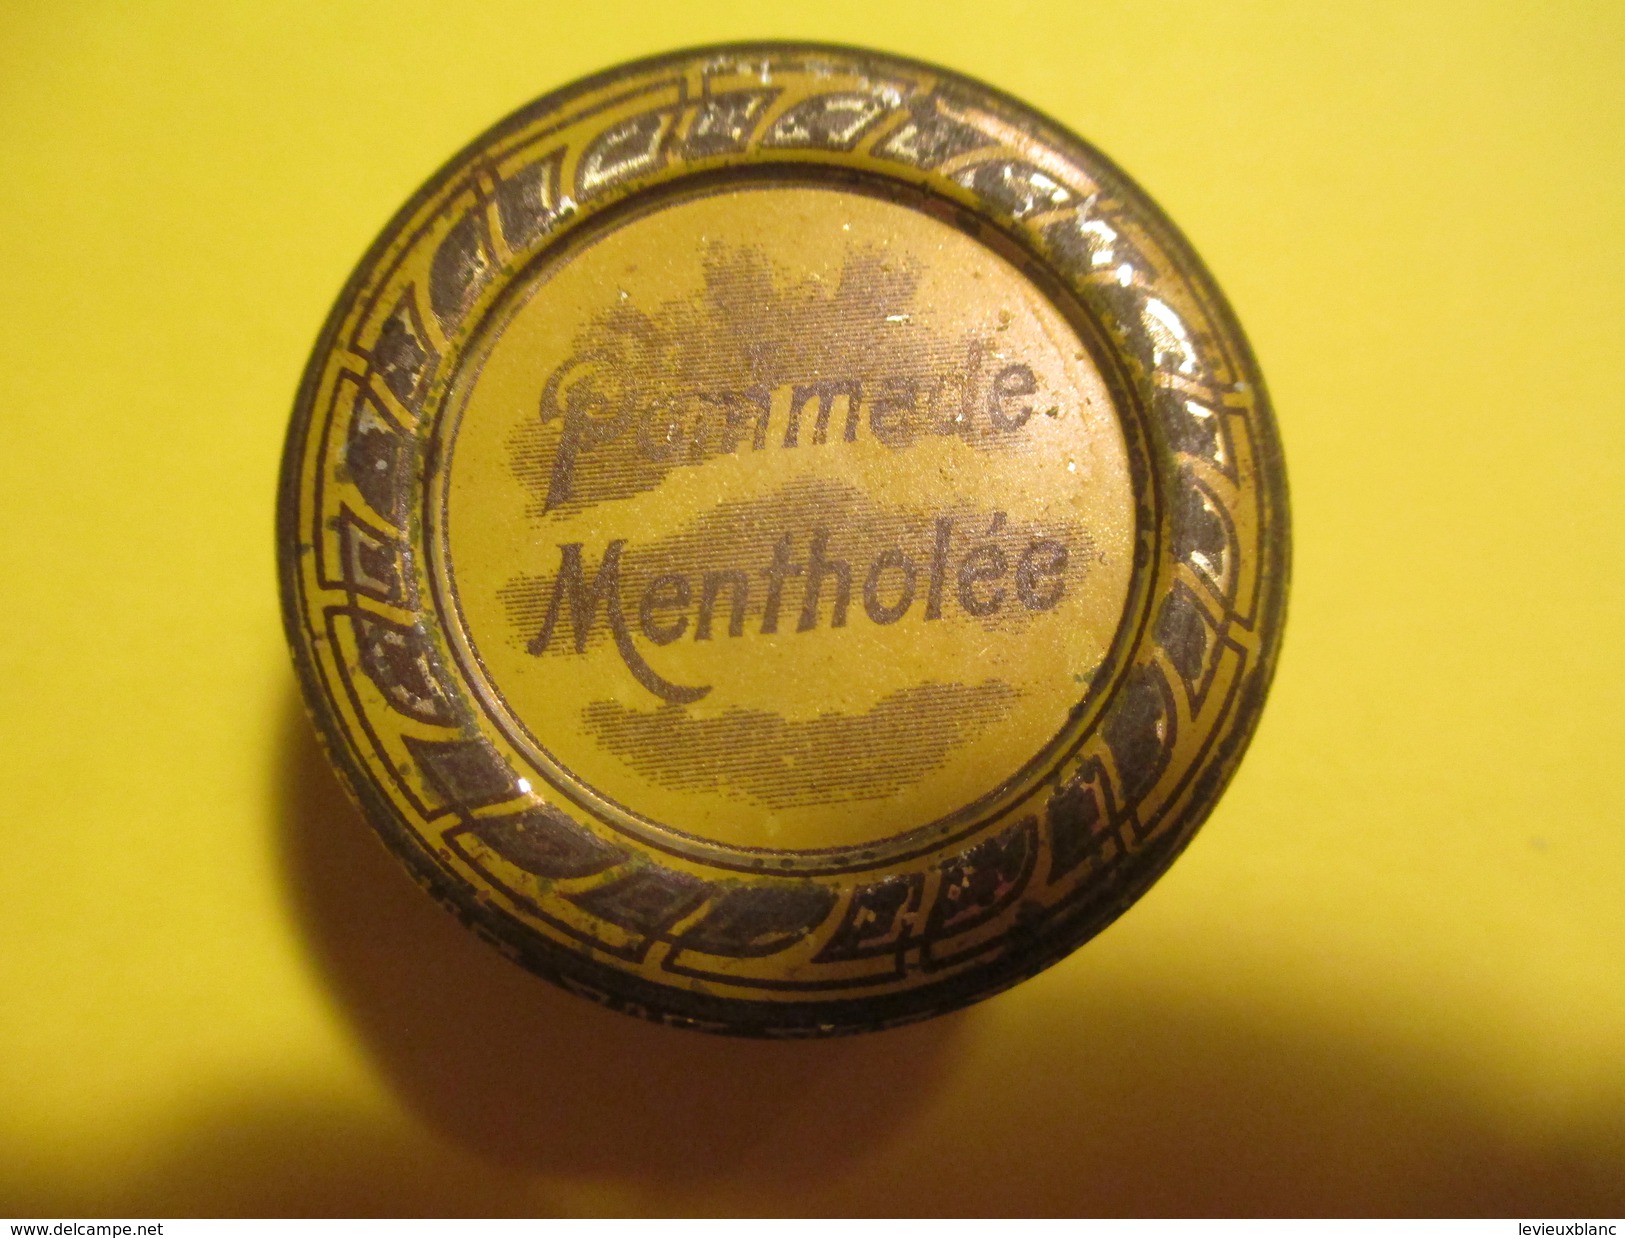 4 Boites Métalliques/Pharma/Pommade Mentholée/Pom.oxydée Zinc/Vaseline Chimiqt Pure/Vas.Boriquée/Vers 1920-1930?  BFPP95 - Boxes